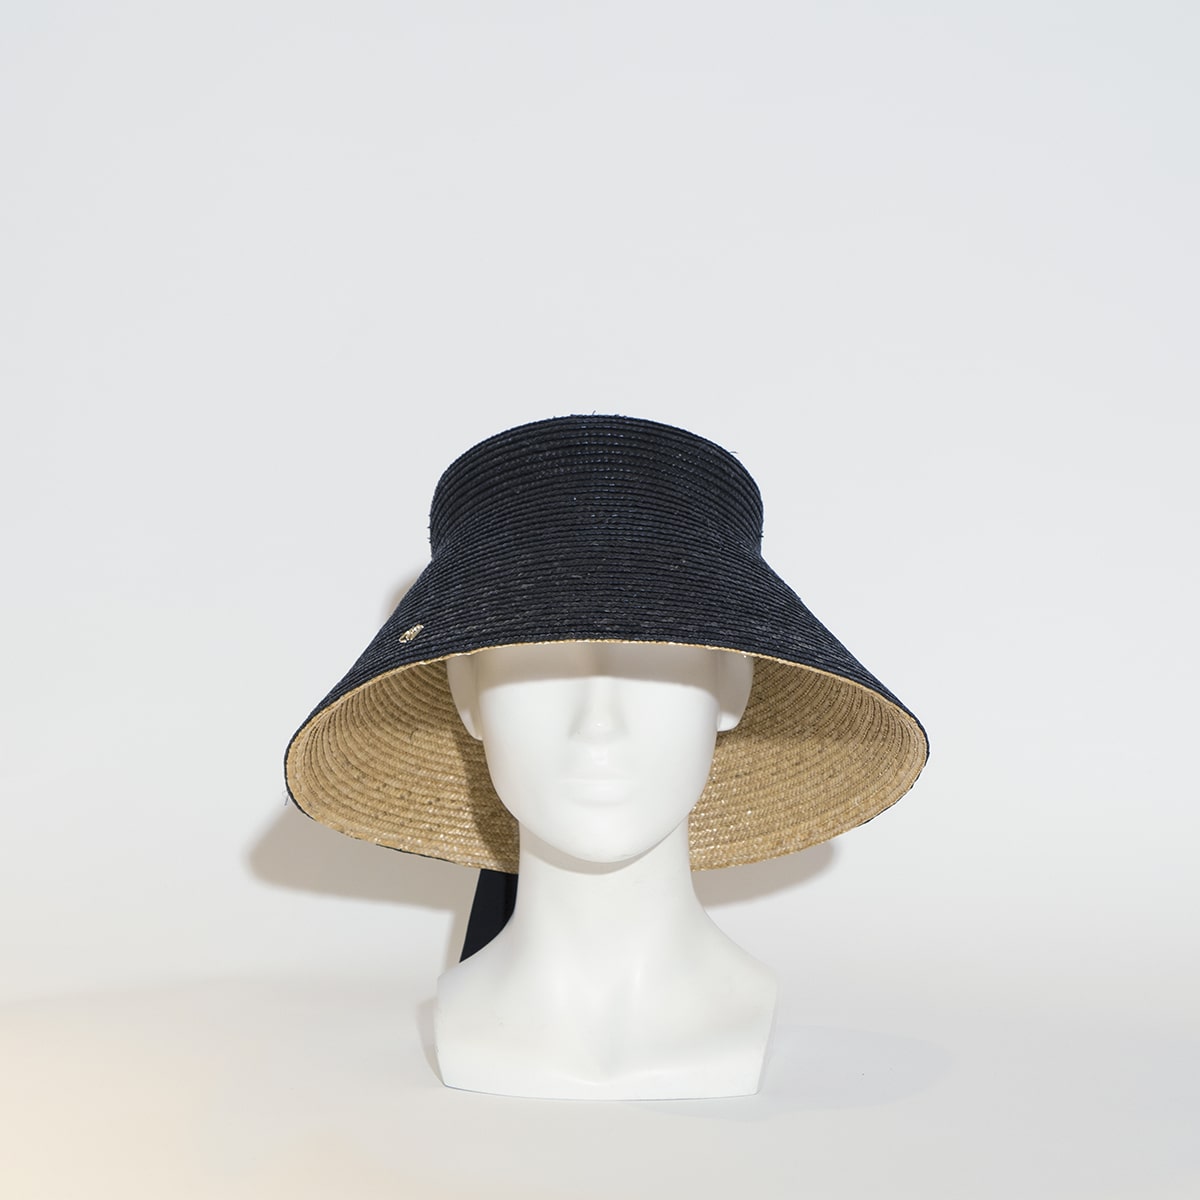 Découvrez notre chapeau capri en paille double bi colore, imaginé et conçu par la modiste italienne Veronica Marucci. D'autres modèles sont disponibles sur demande par e-mails ou rendez-nous visite au sein de notre chapellerie. 